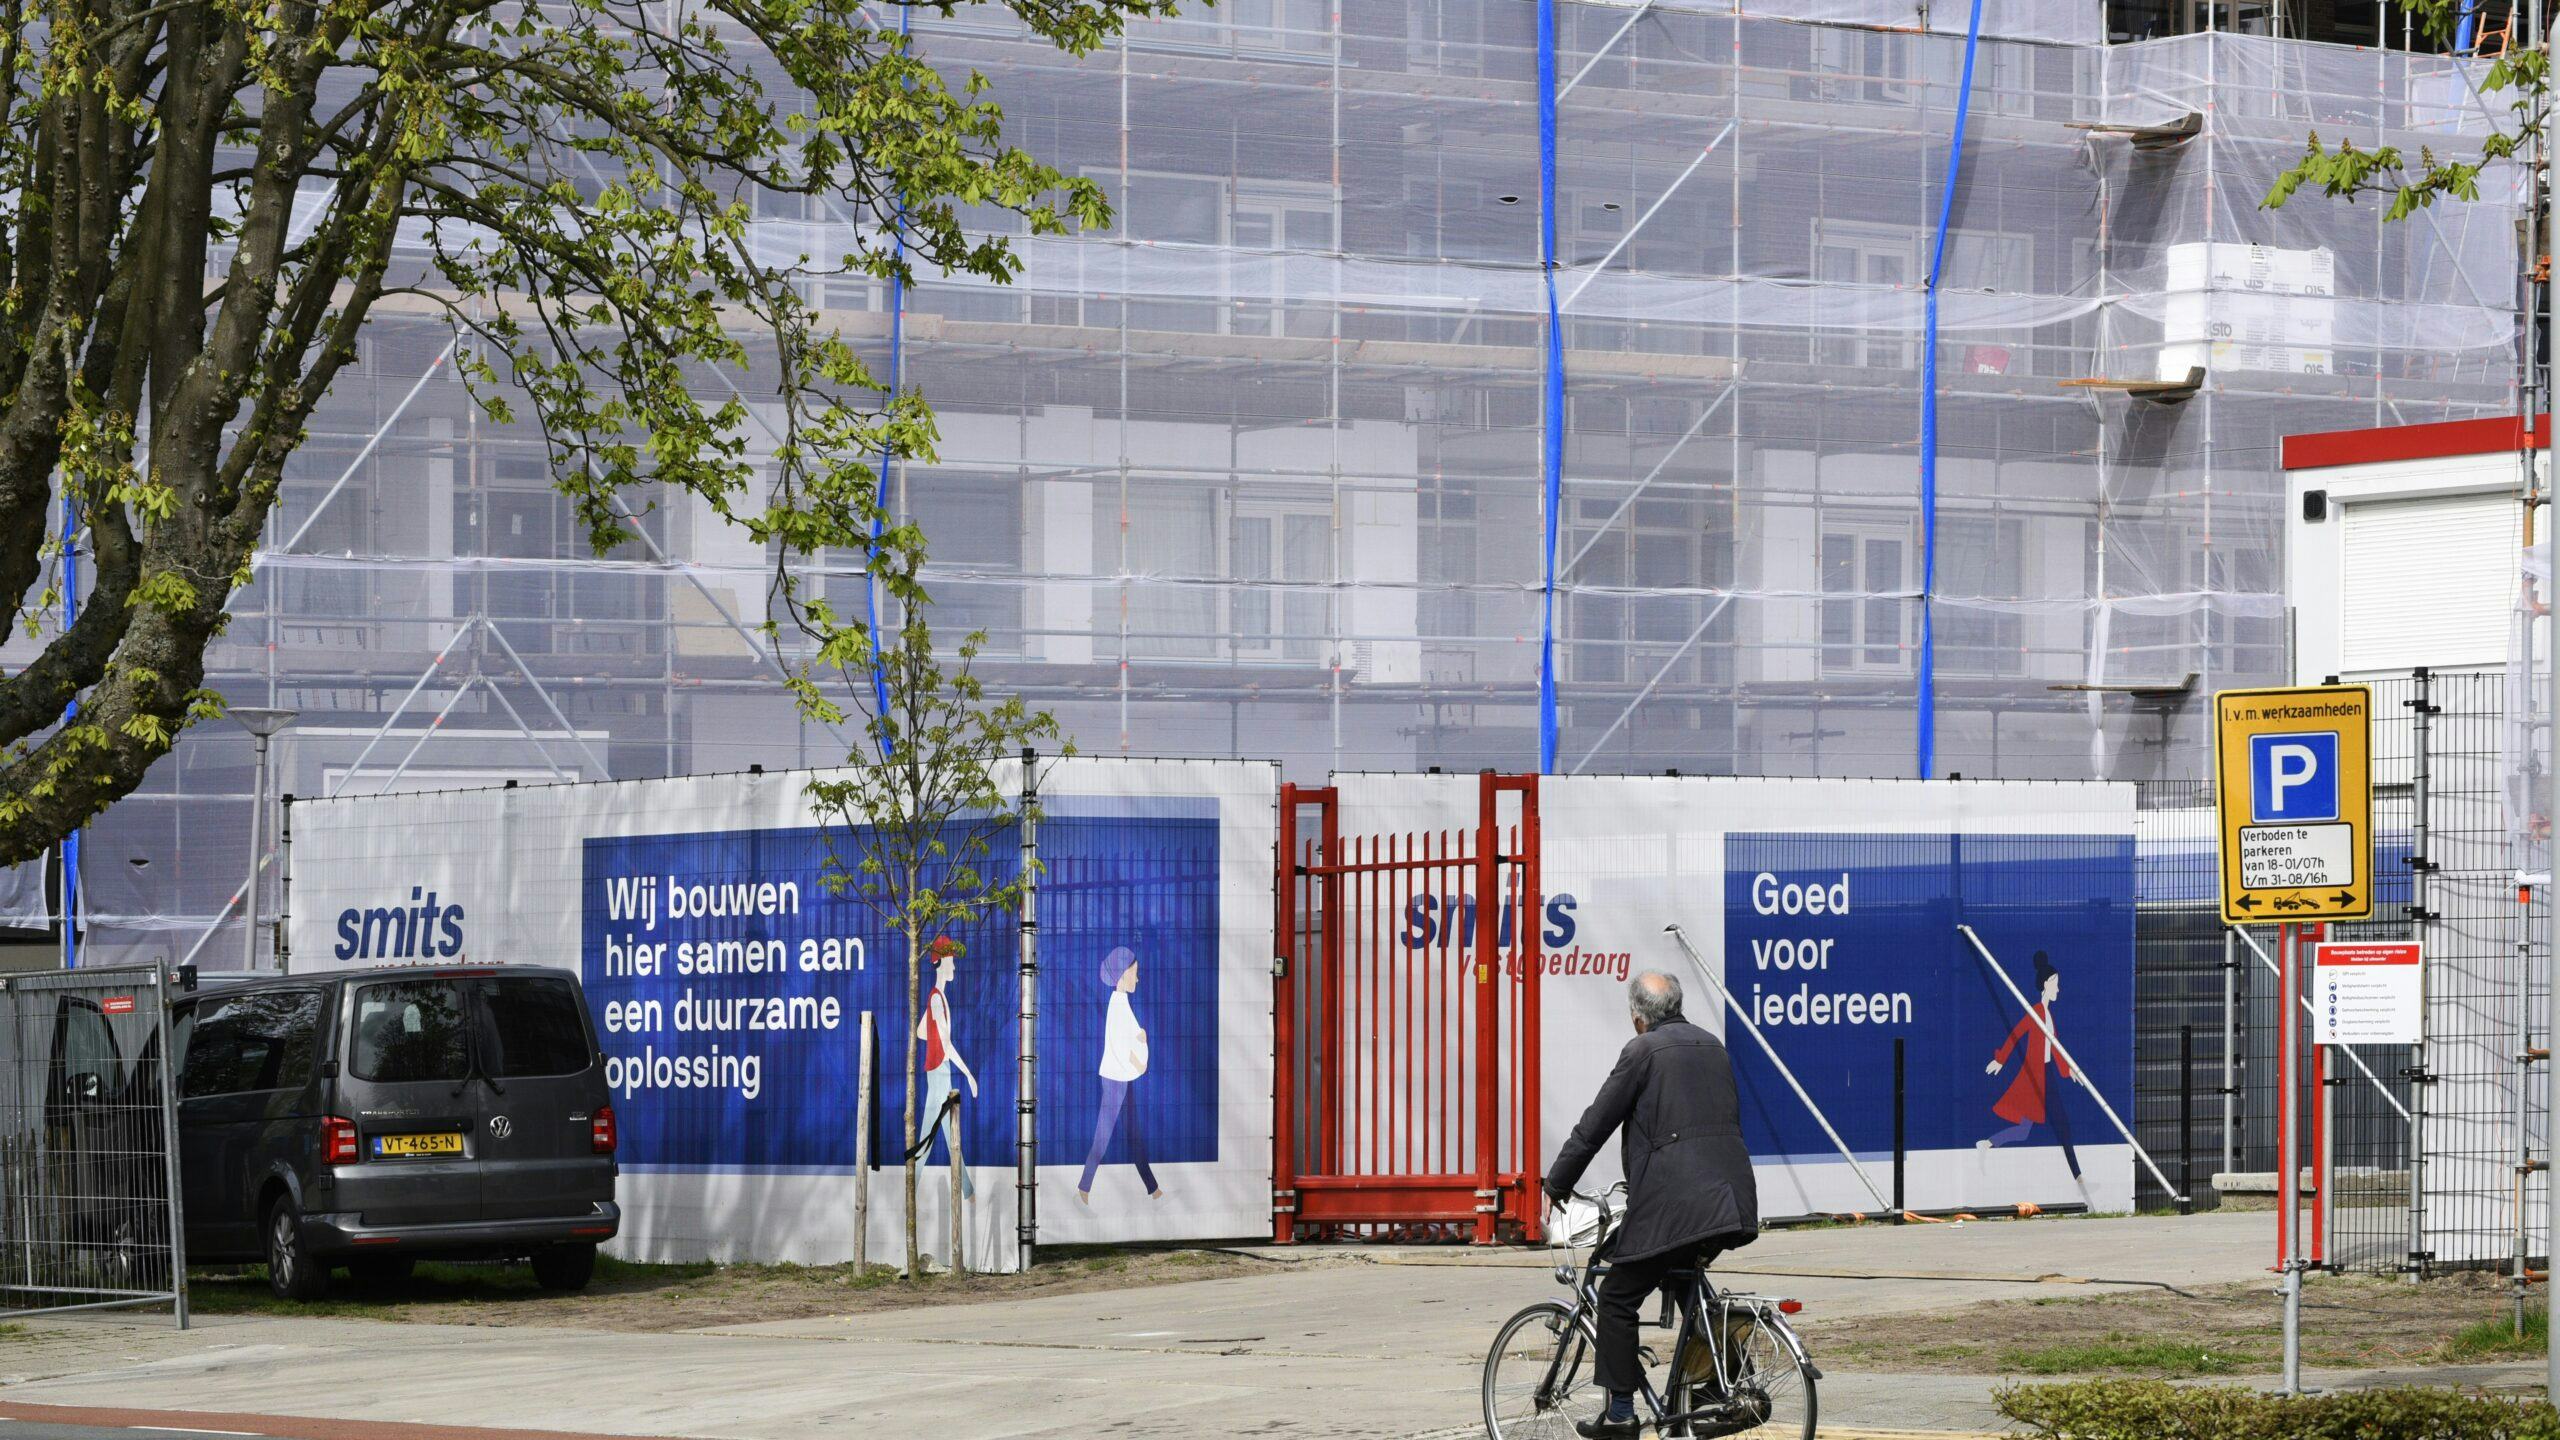 Renovatie van 79 sociale huurwoningen van woningbouwvereniging Havensteder in Rotterdam Schiebroek. 
Foto: ANP / Hollandse Hoogte / Peter Hilz